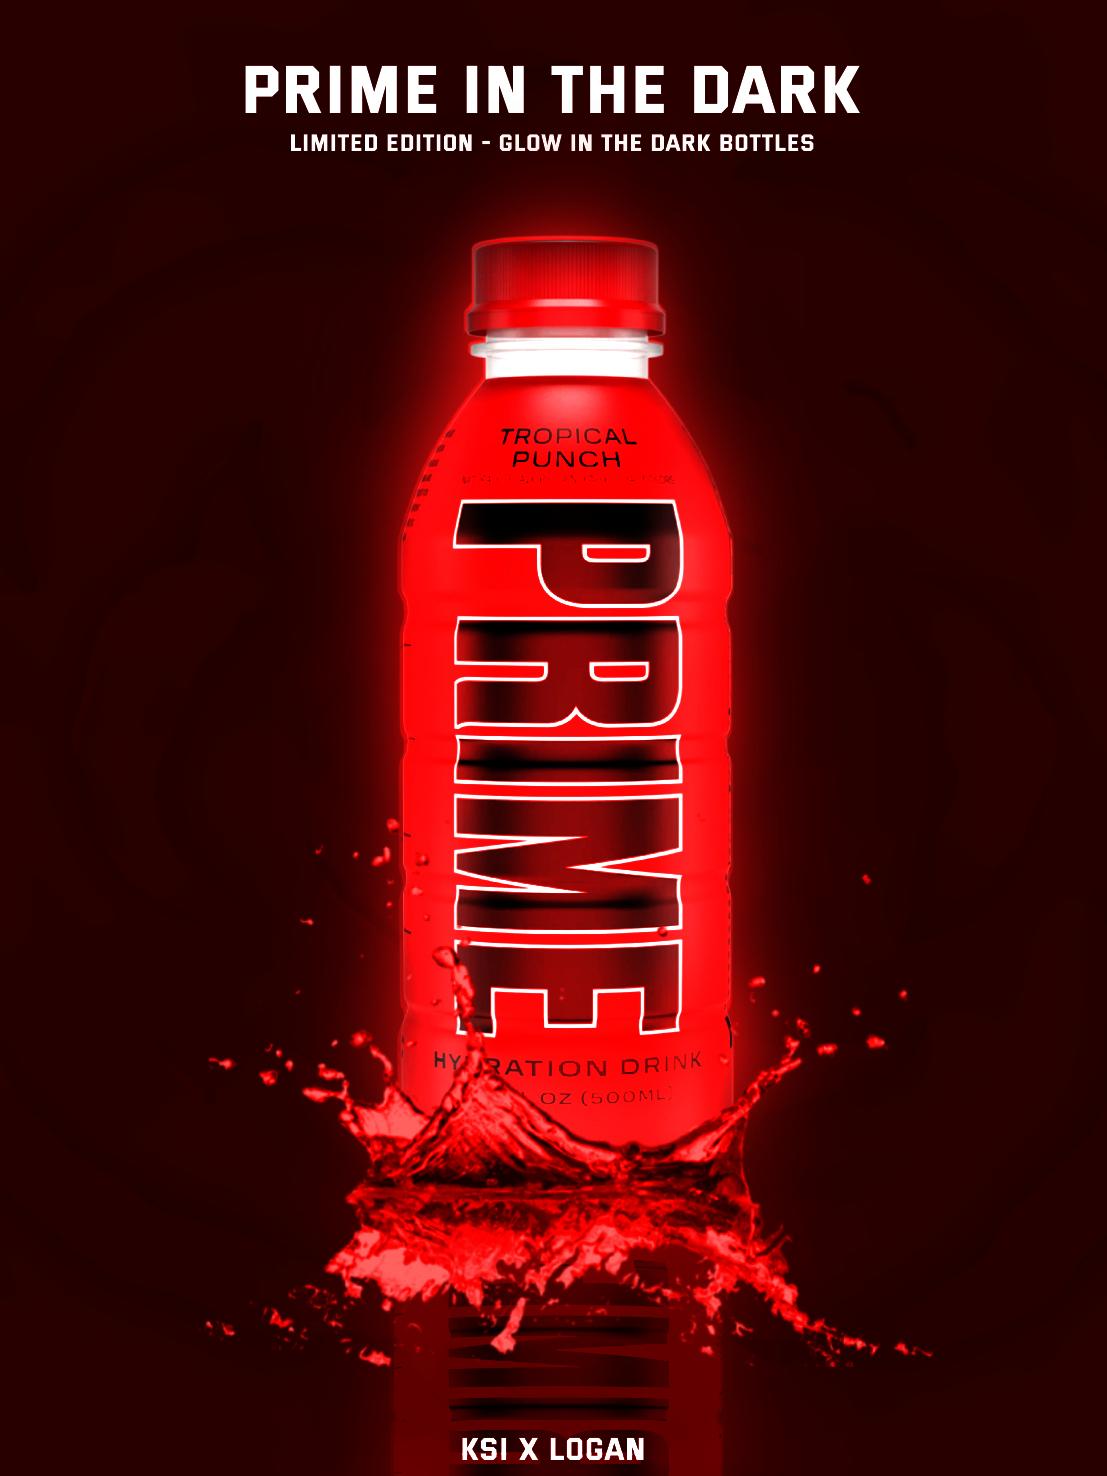 Prime Hydration teen boys and stellar marketing